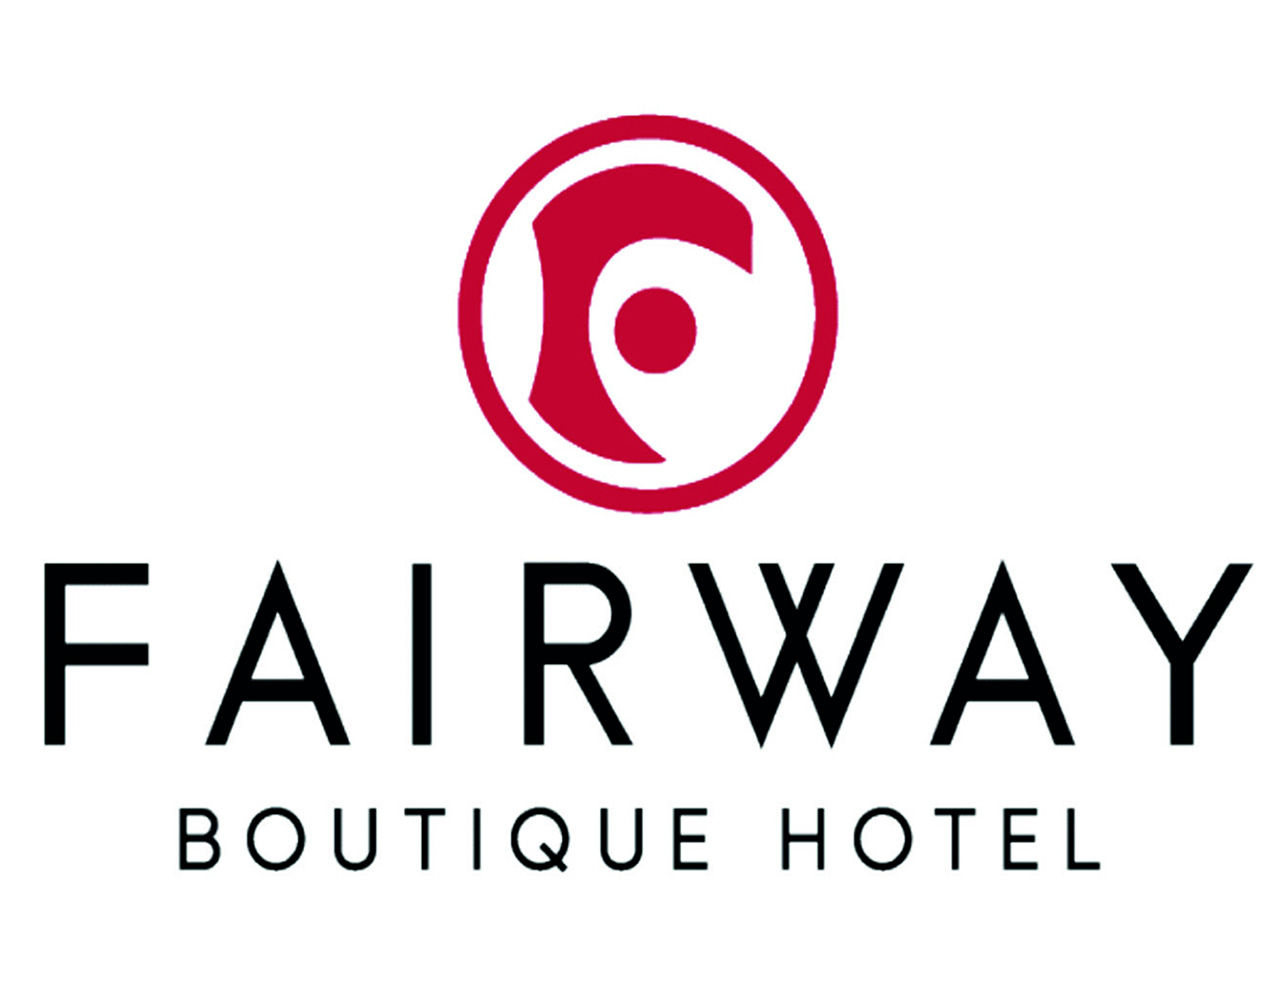 Fairway Boutique Hotel (Fairway Hotel Limited)